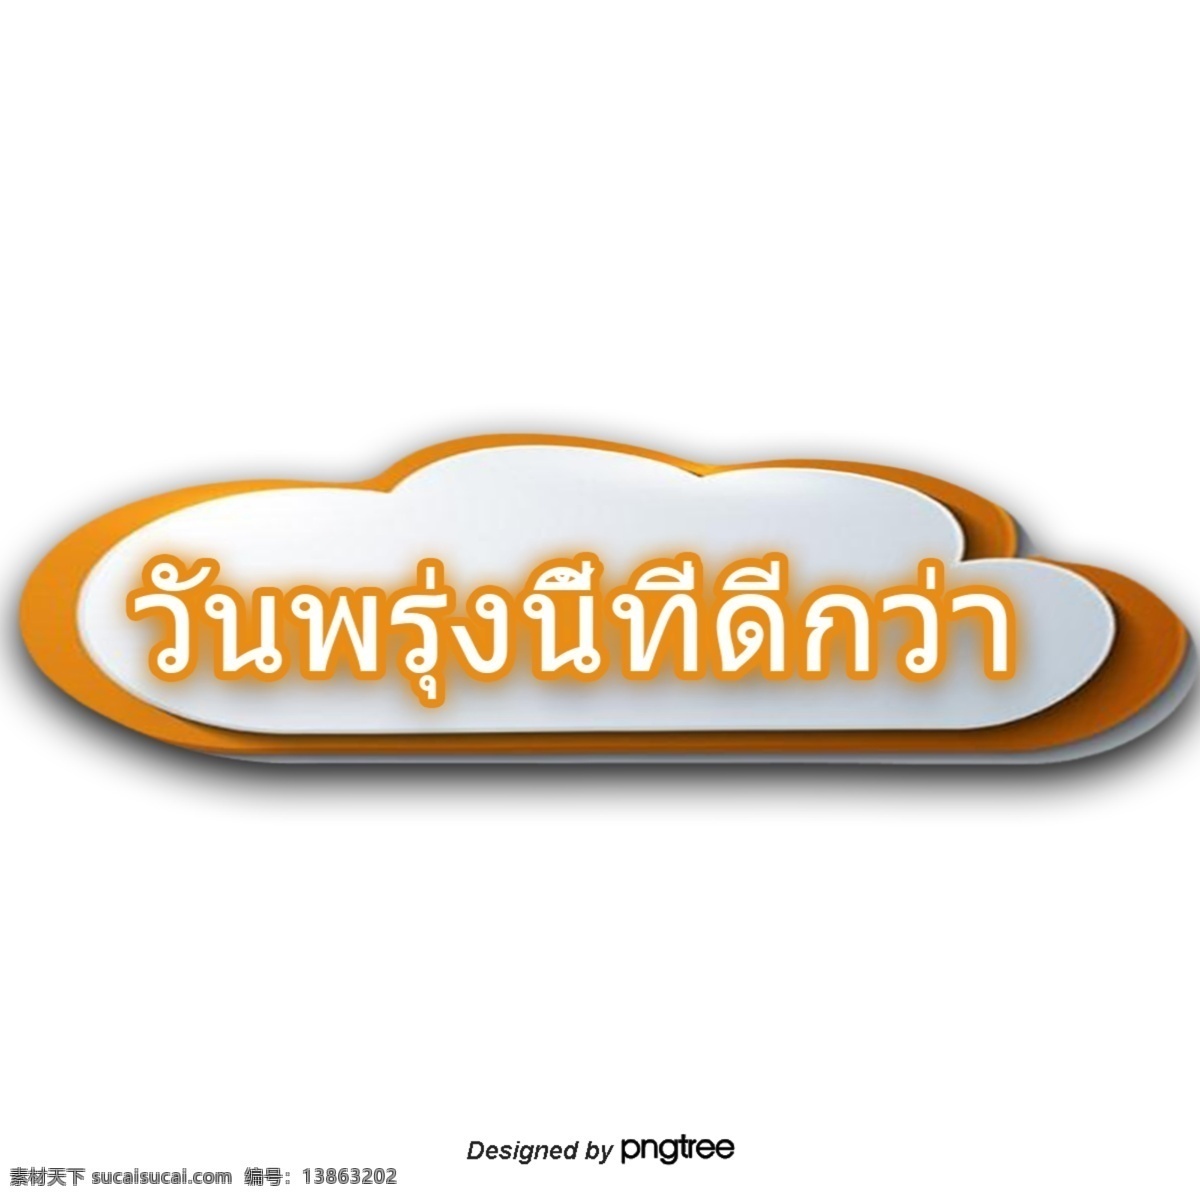 泰国 文字 字体 橙色 思想 共创 美好 明天 美好的明天